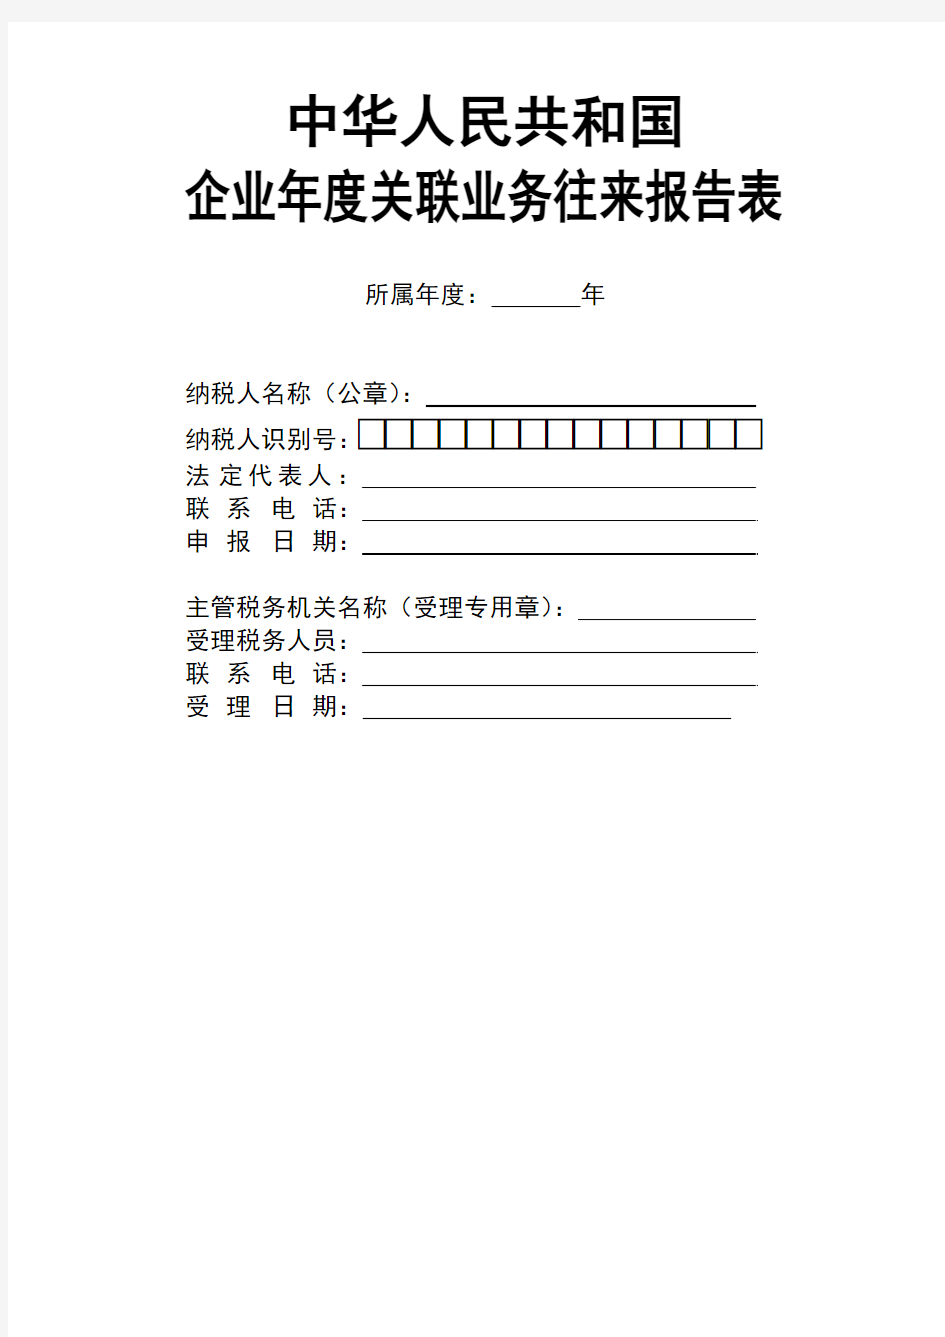 中华人民共和国企业年度关联业务往来报告表(全套)